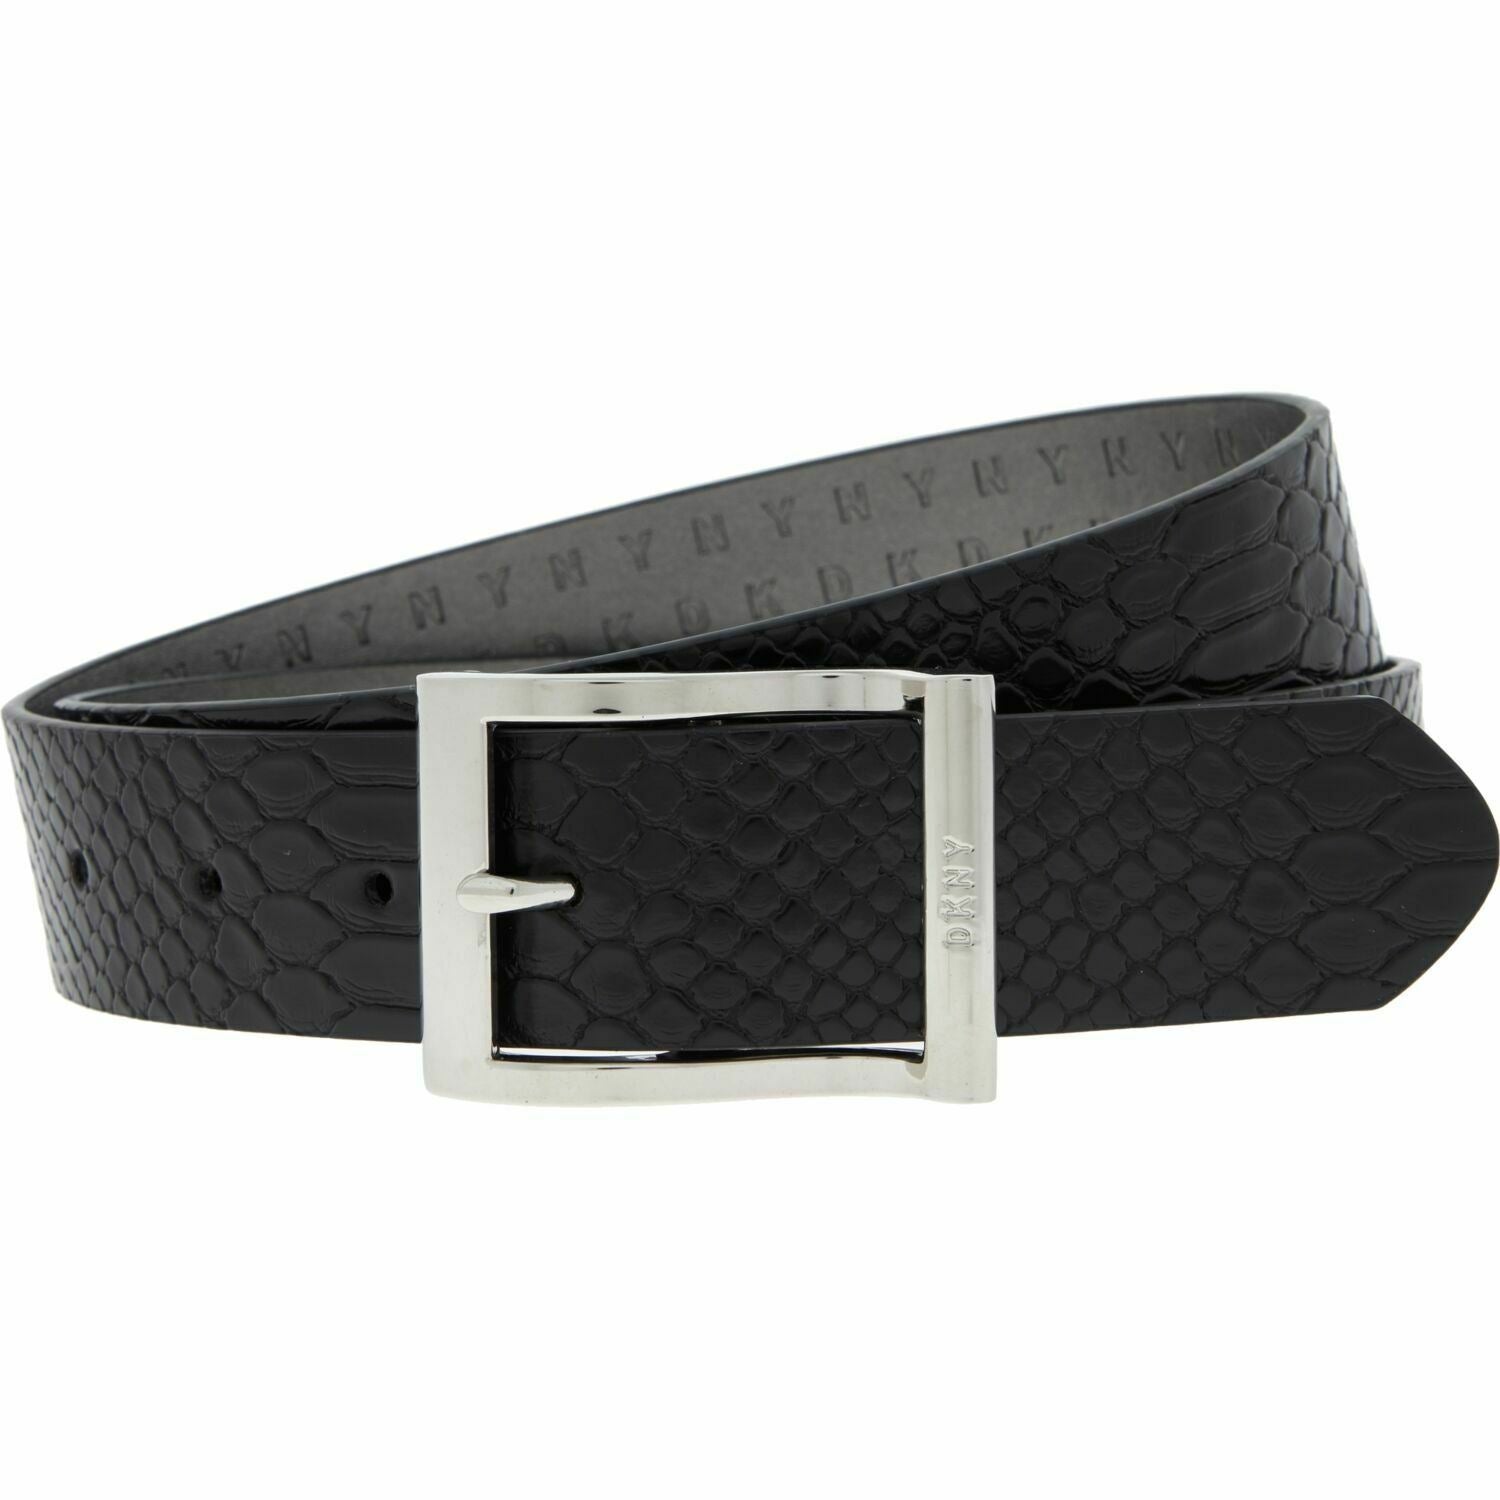 DKNY Women's Faux Leather Reptile Effect Belt, Black, 1.25" wide, size M